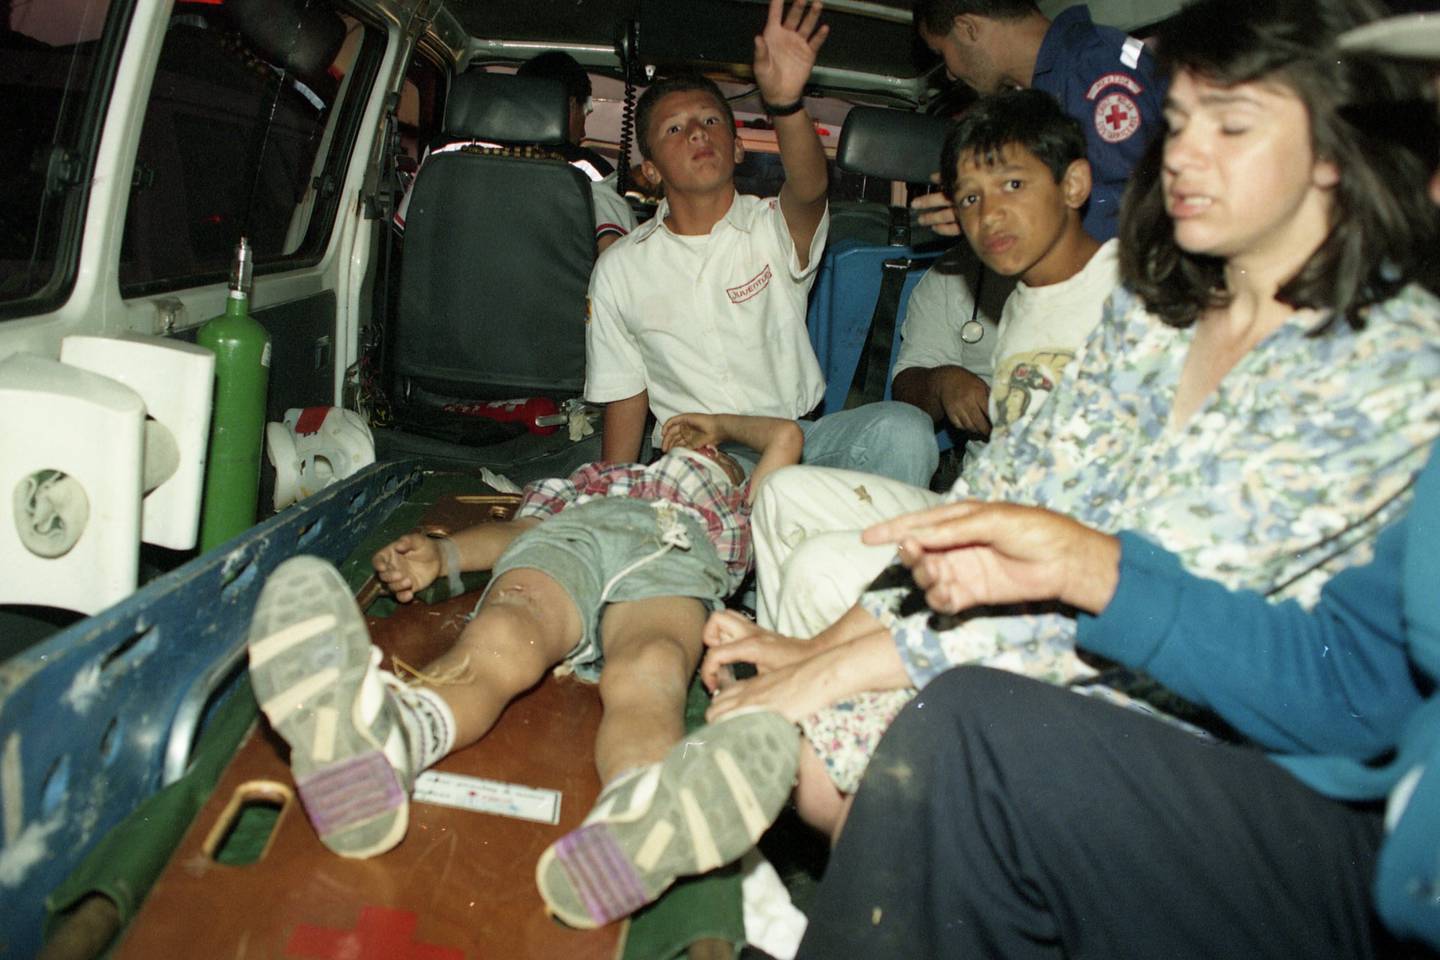 En abril de 1997 once menores de edad resultaron heridos por una falle en el juego mecánico de las sillas voladoras, esto durante un turno en San Miguel de Santo Domingo de Heredia. Foto Archivo.